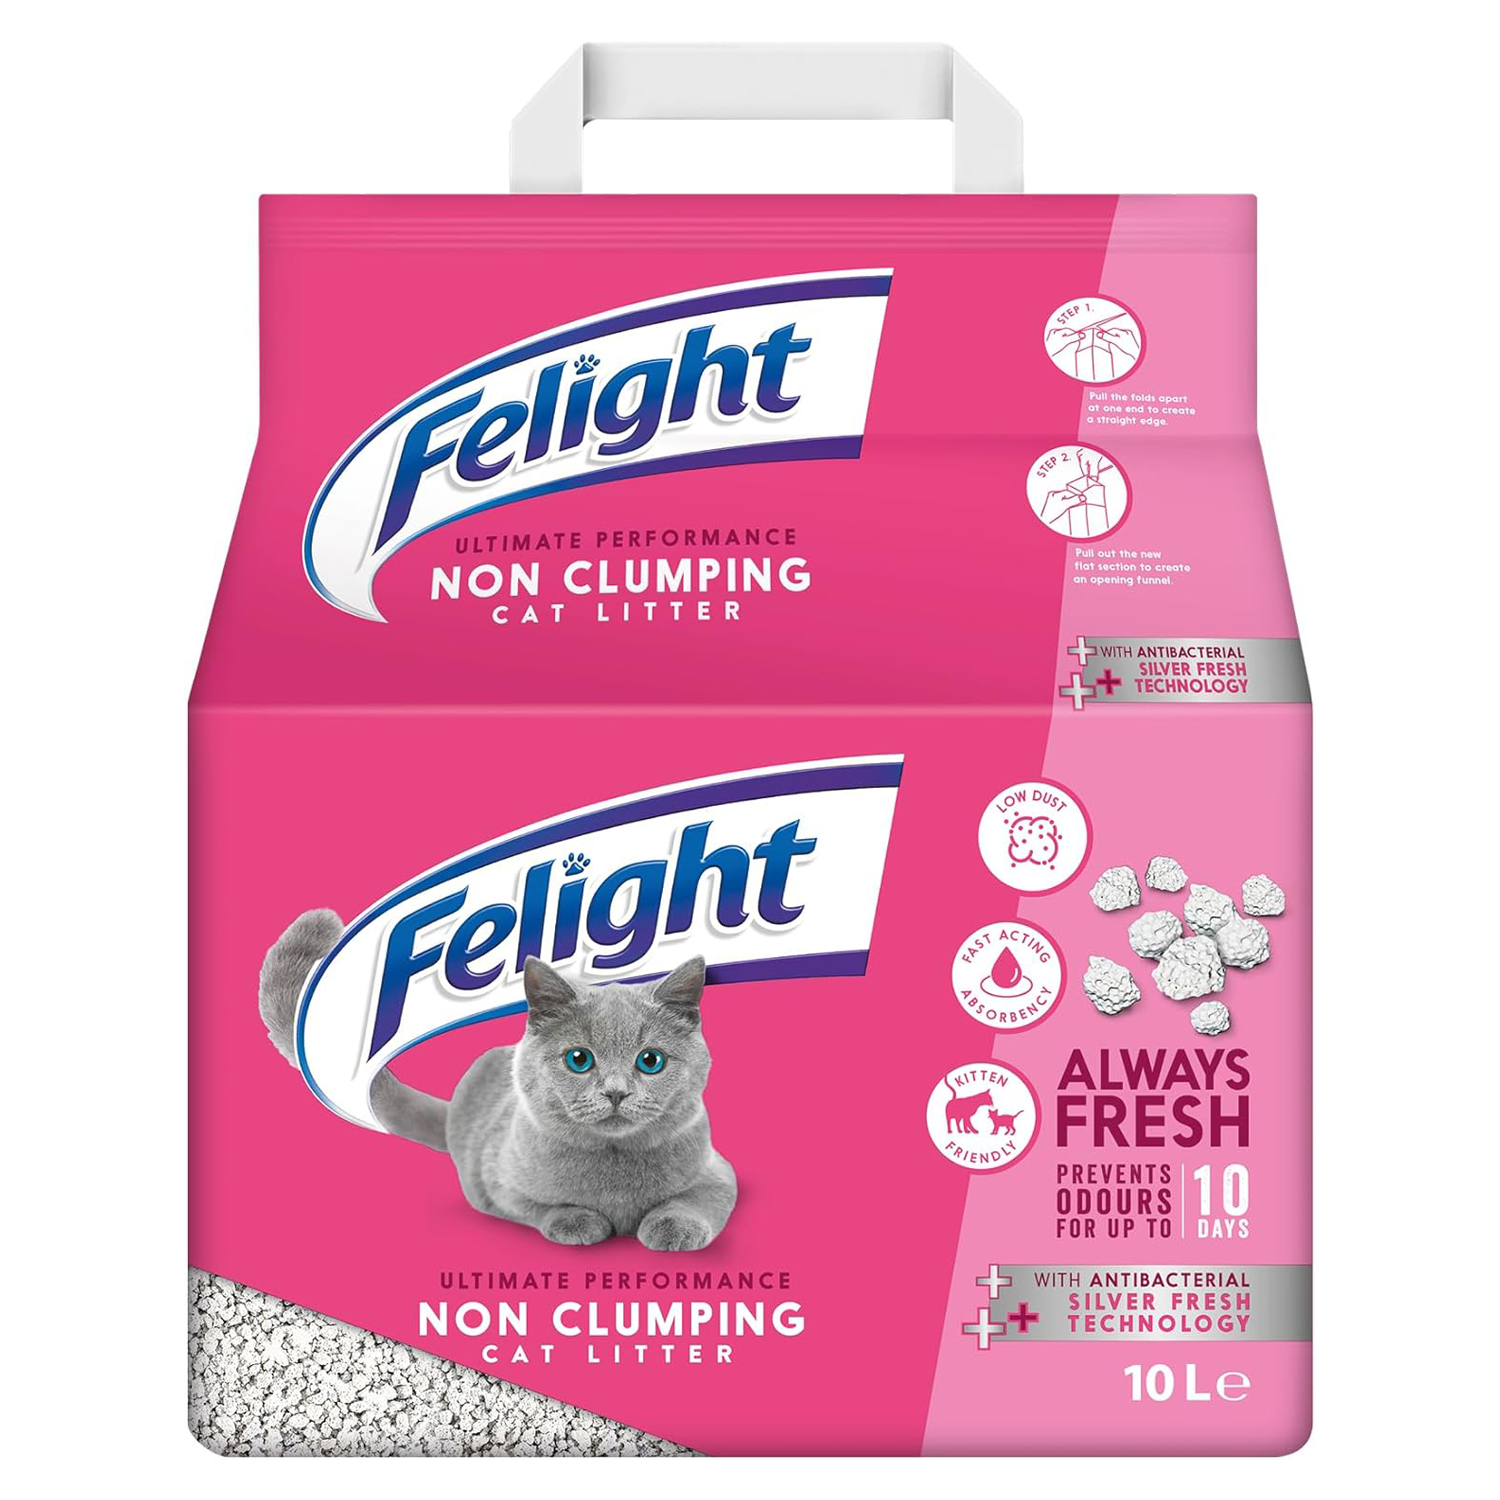 Felight | Non-Clumping Cat Litter